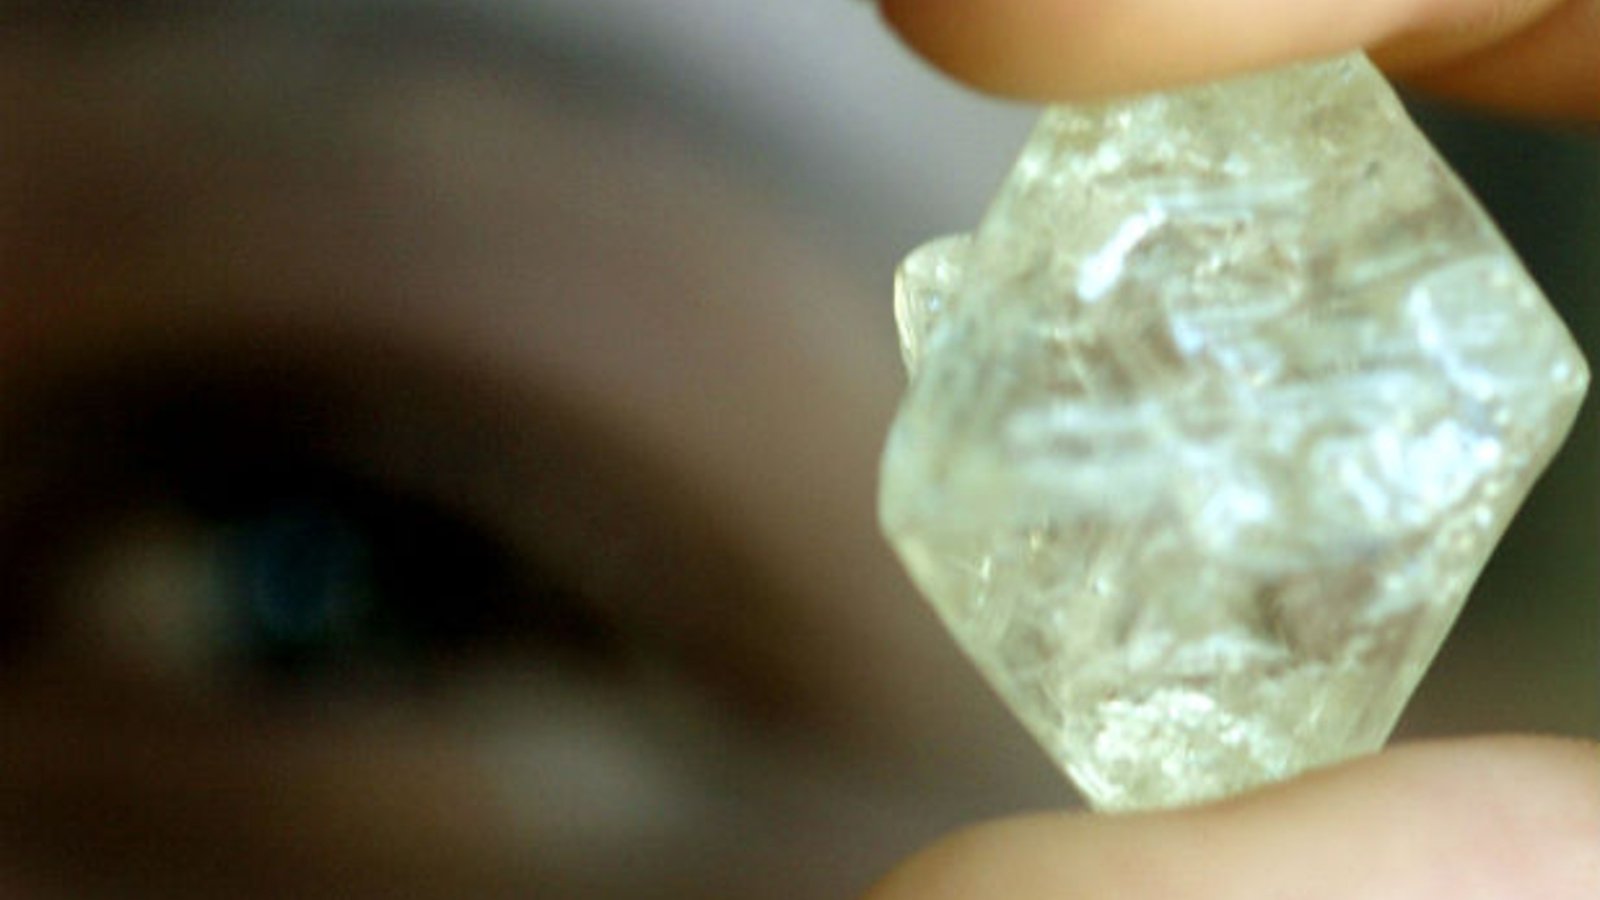 De Beers signs new diamond sales deal with Botswana - Radar Africa